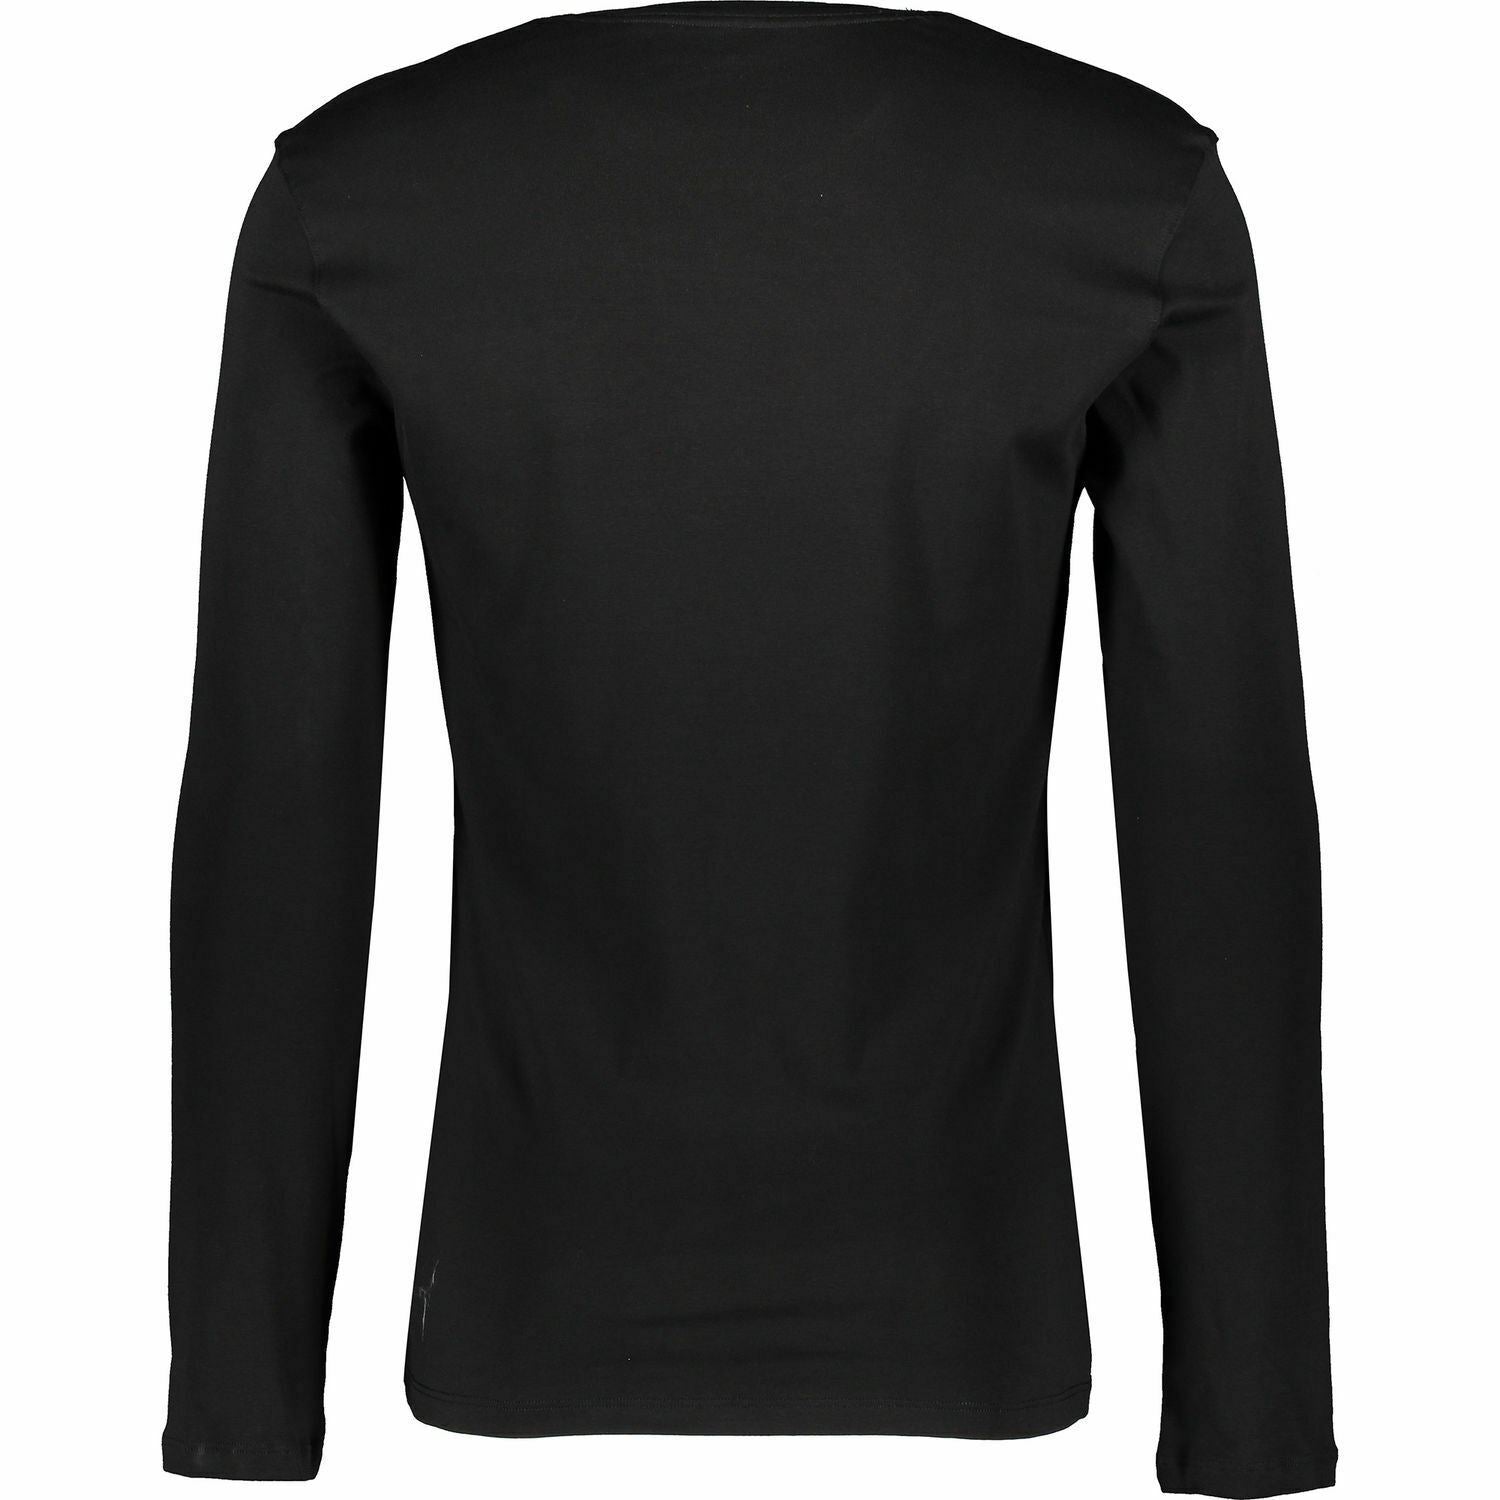 CALVIN KLEIN Men's Long Sleeve Premium Cotton Top, Slim Fit, size XL